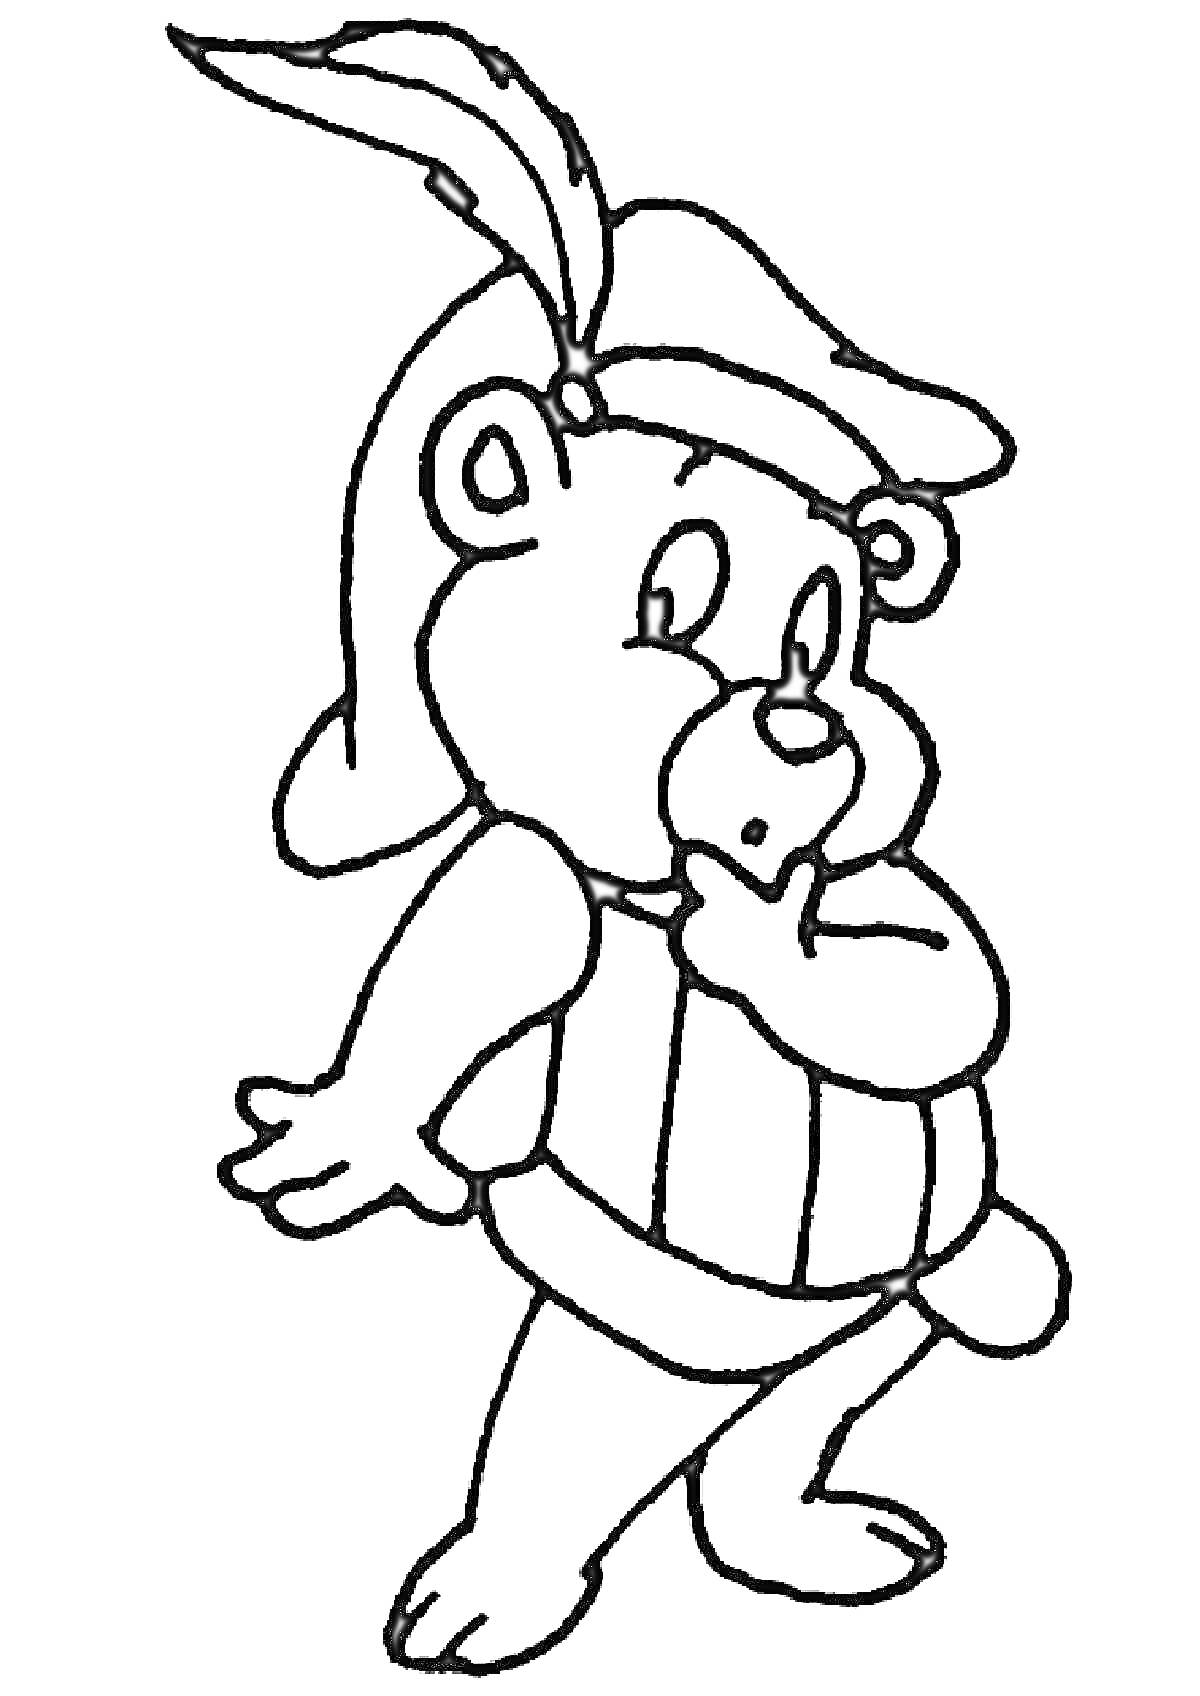 Раскраска Мишка Гамми в шлеме с пером, позирующий с поднятой рукой ко рту